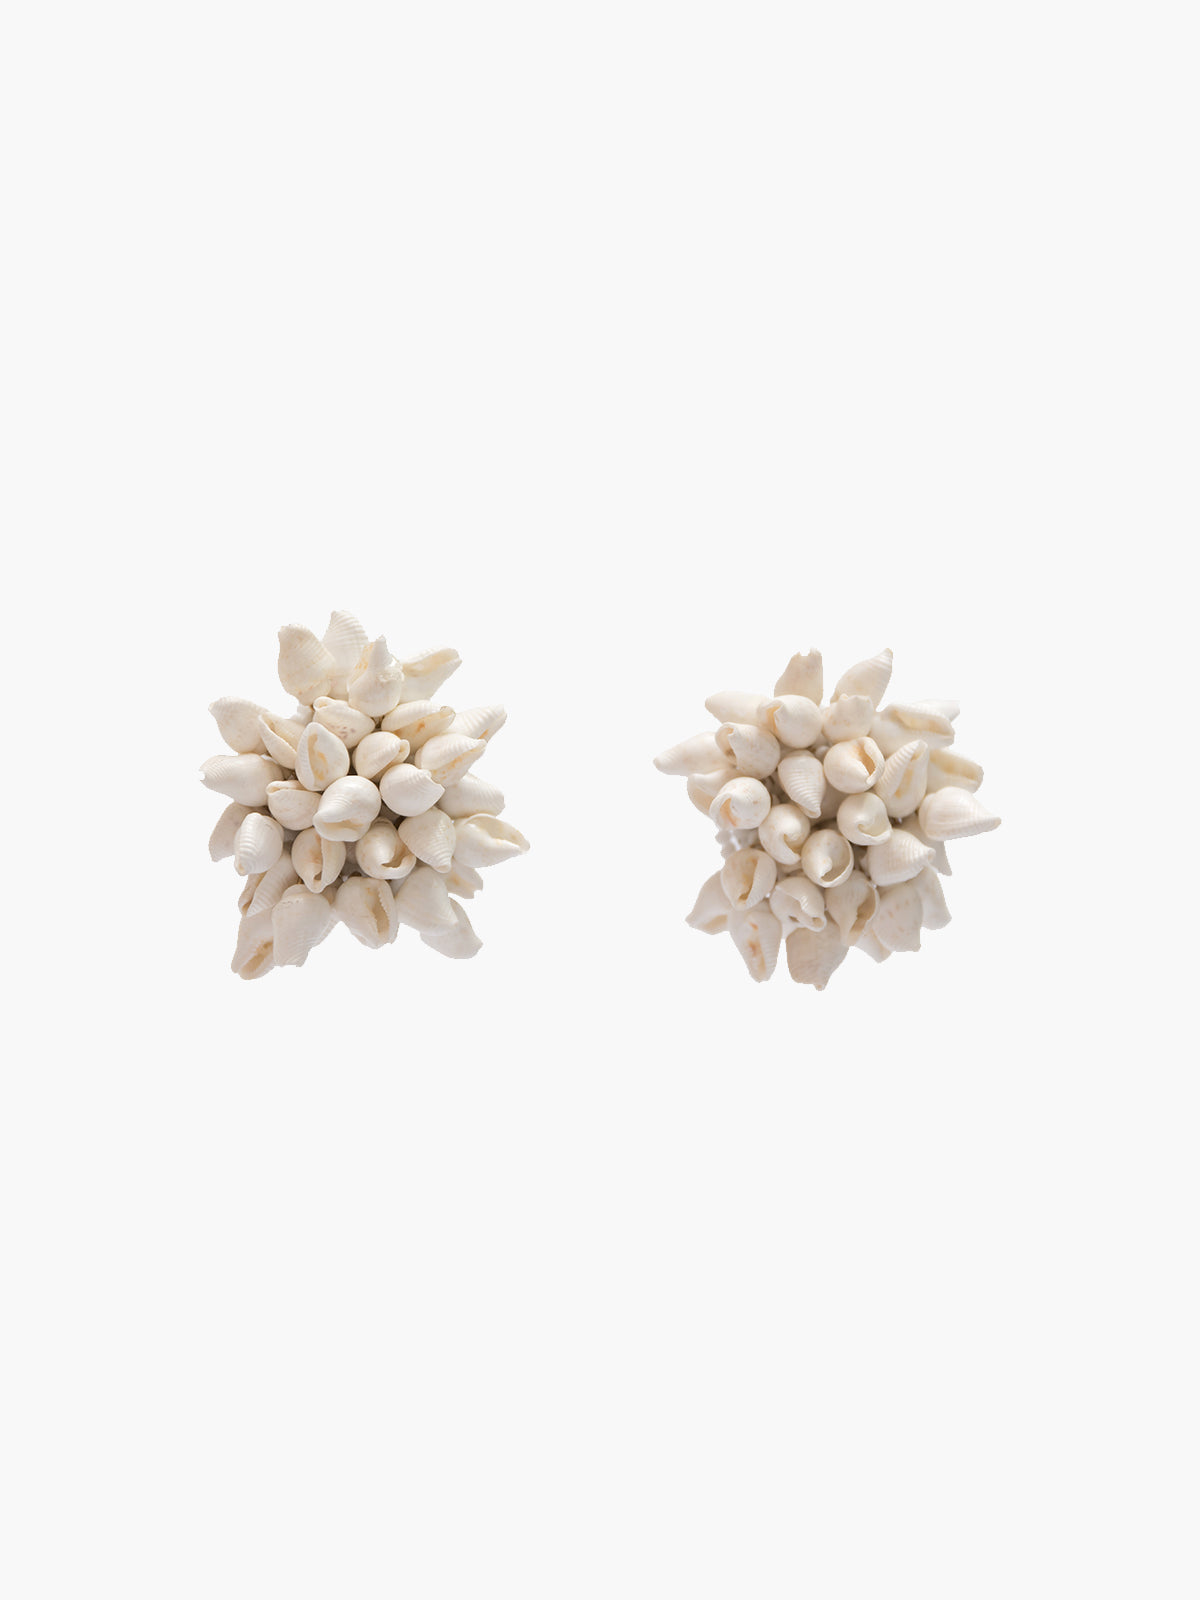 Seashell Stud Earrings | Natural Seashell Stud Earrings | Natural - Fashionkind